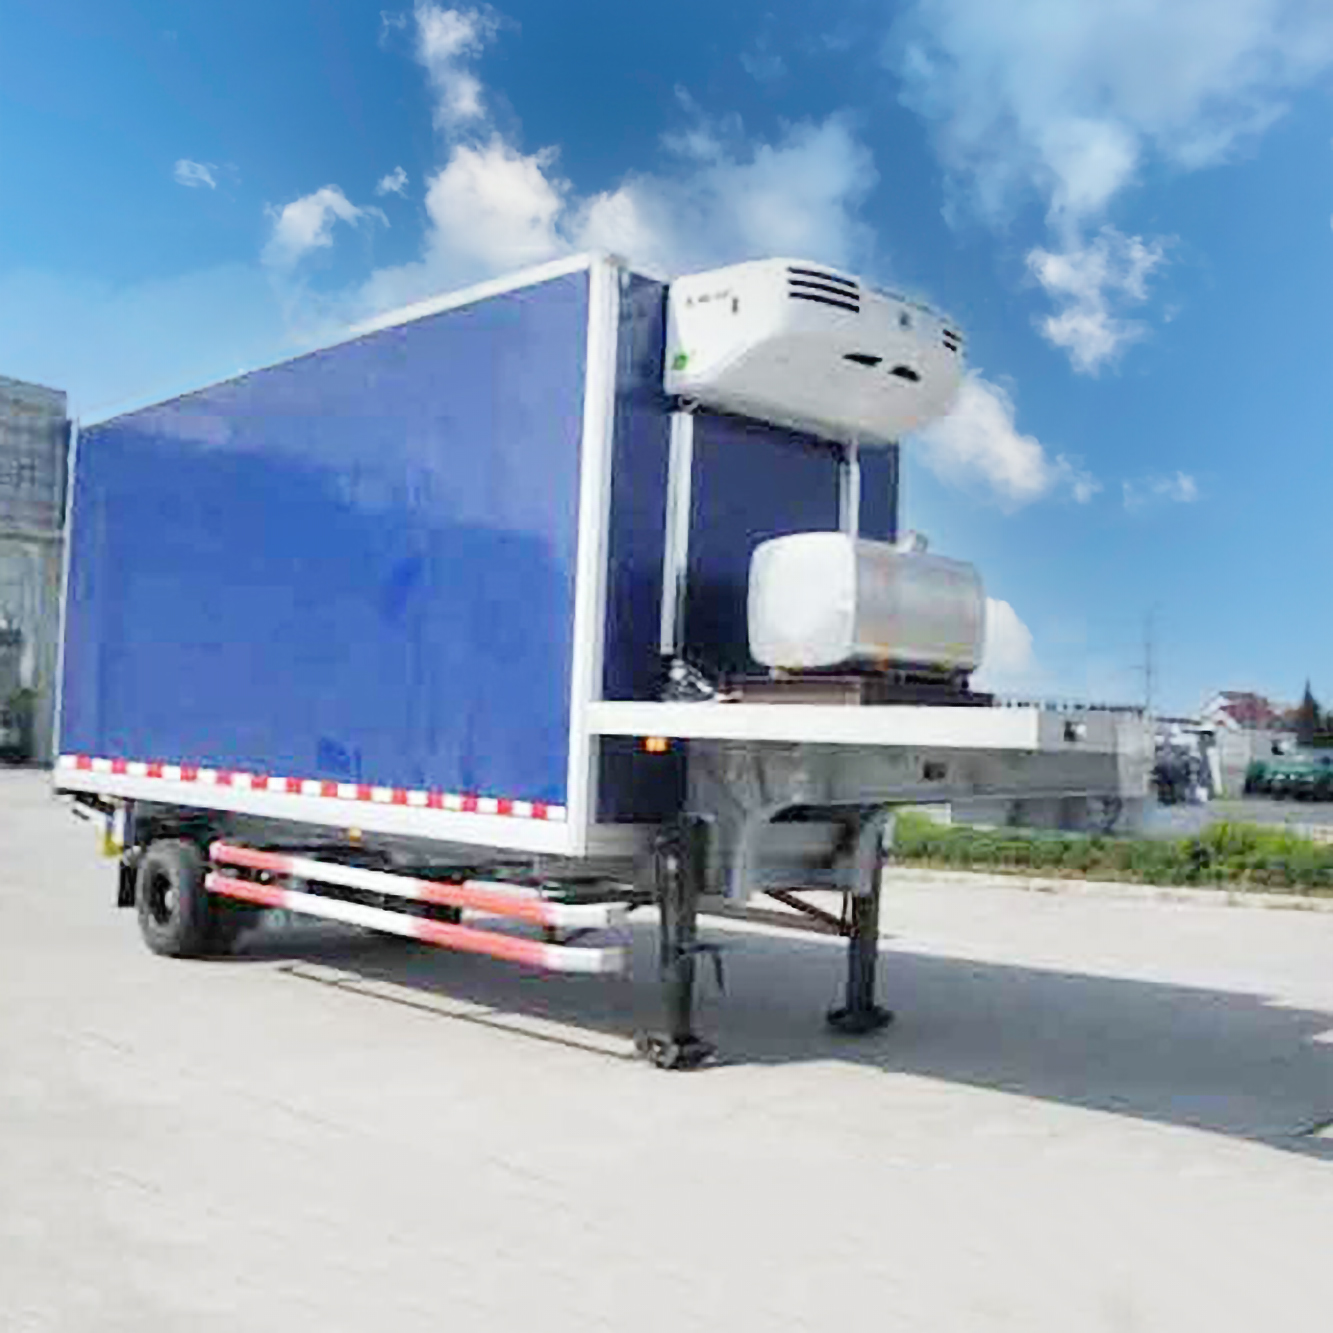 Semirremolque de camión refrigerado de un solo eje de 30 pies